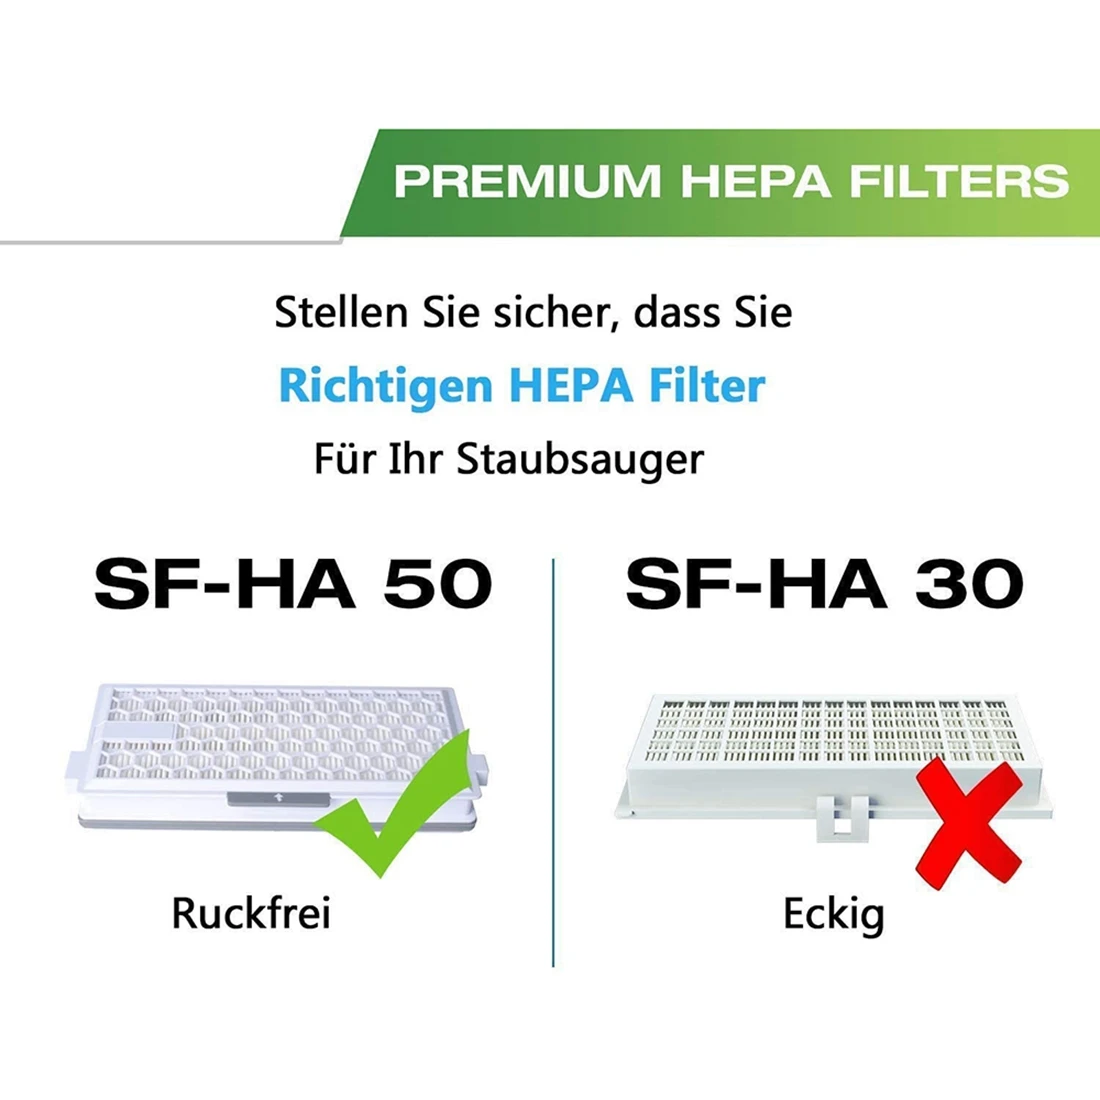 4 Комплекта HEPA-филтри за Miele AirClean SF-HA 50 Филтри Модели S4, S5, S6, S8, S8000, S6000, S5000, S4000, в комплект C1, C2 и C3 . ' - ' . 2